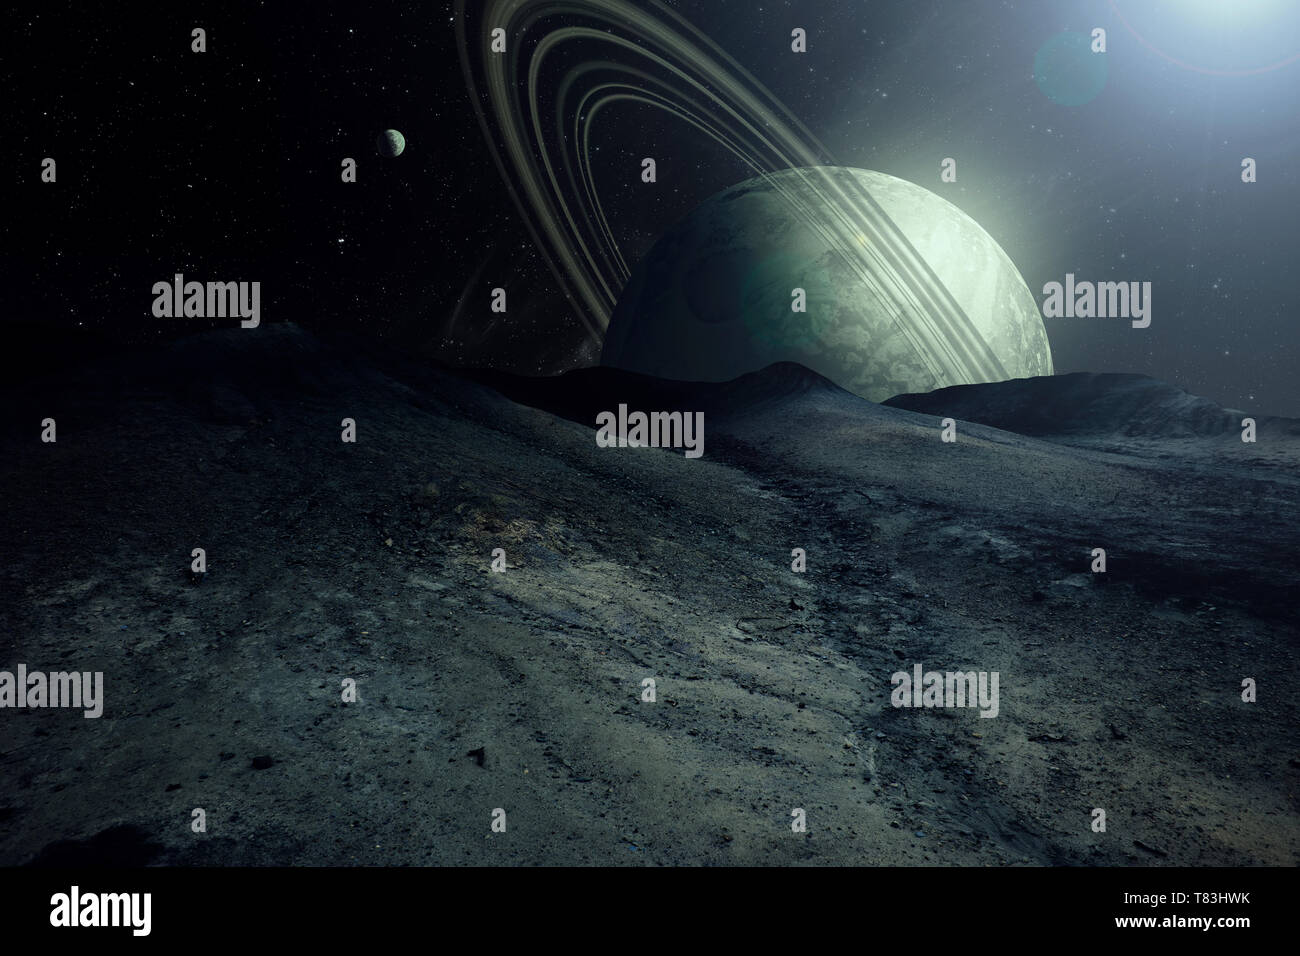 Pianeta alieno paesaggio con pianeti e satelliti nel cielo, esplorazione dello spazio surreale immagine Foto Stock